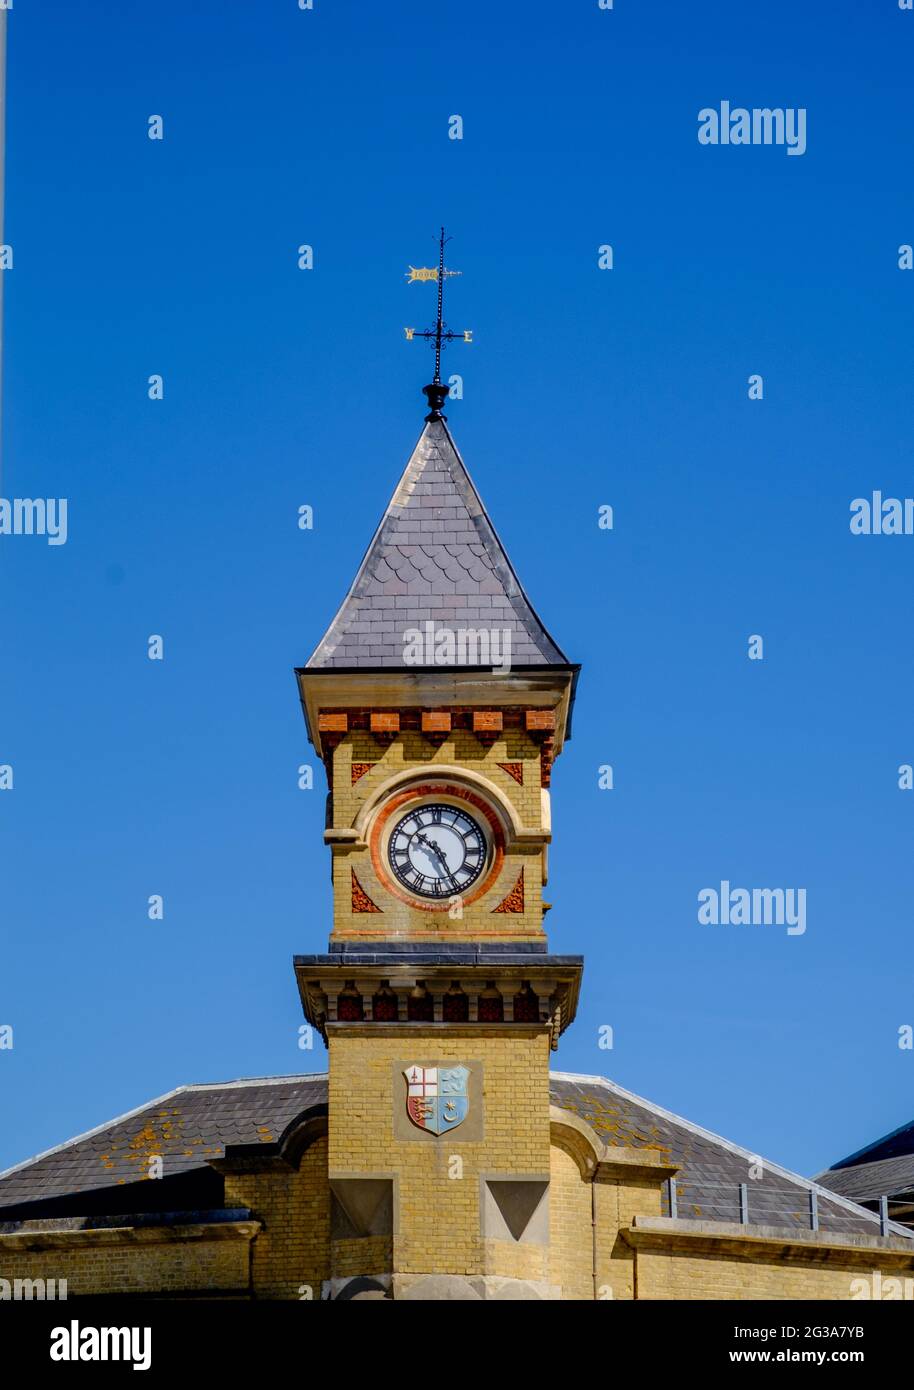 Staycation Idee. Eastbourne Railway Station Uhrenturm, mit Wappen, gegen einen wolkenlosen blauen Himmel. East Sussex, England, Großbritannien Stockfoto